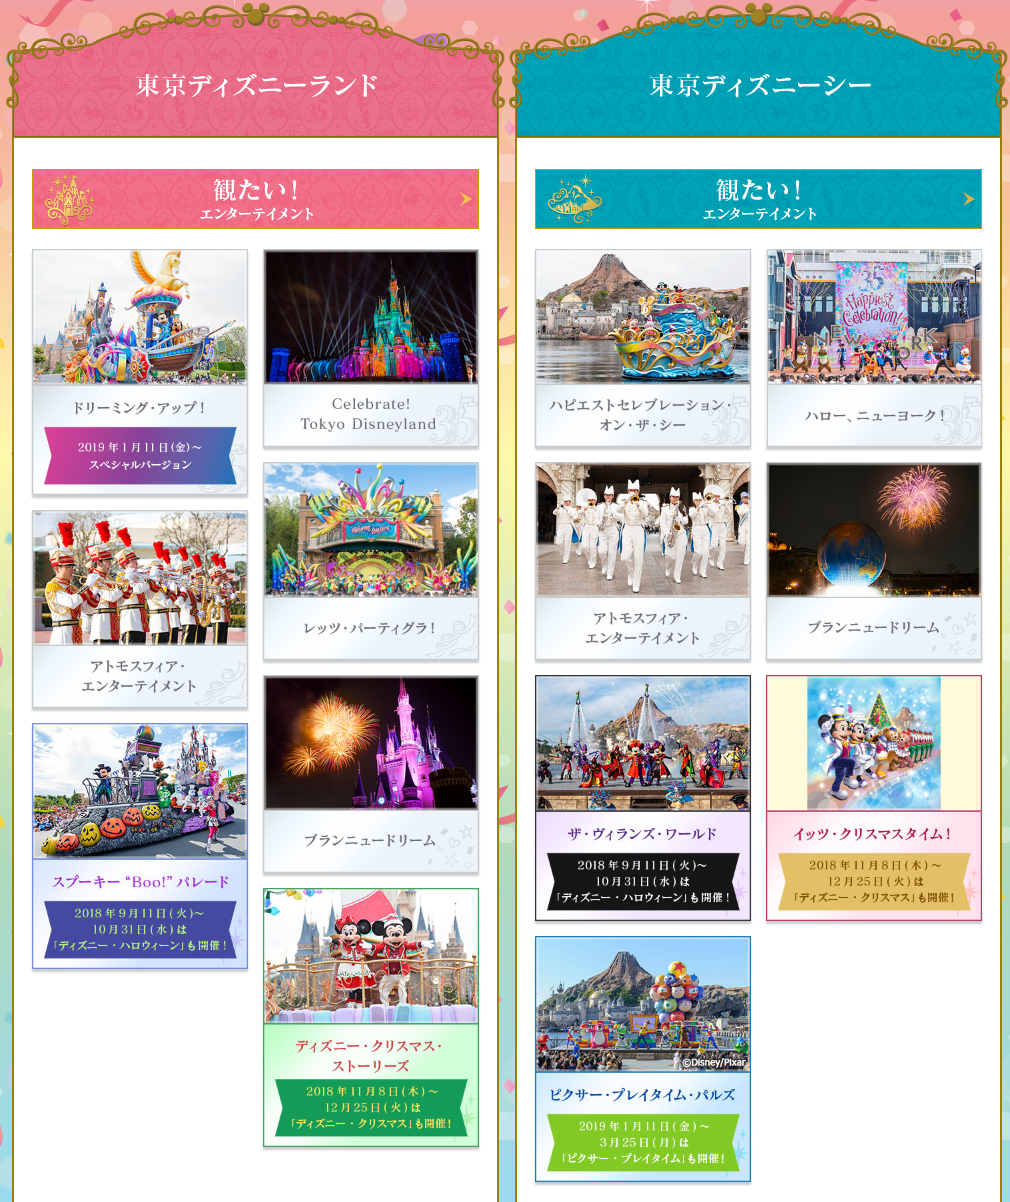 東京ディズニーリゾート35周年 Happiest Celebration お馬鹿のブログ 楽天ブログ